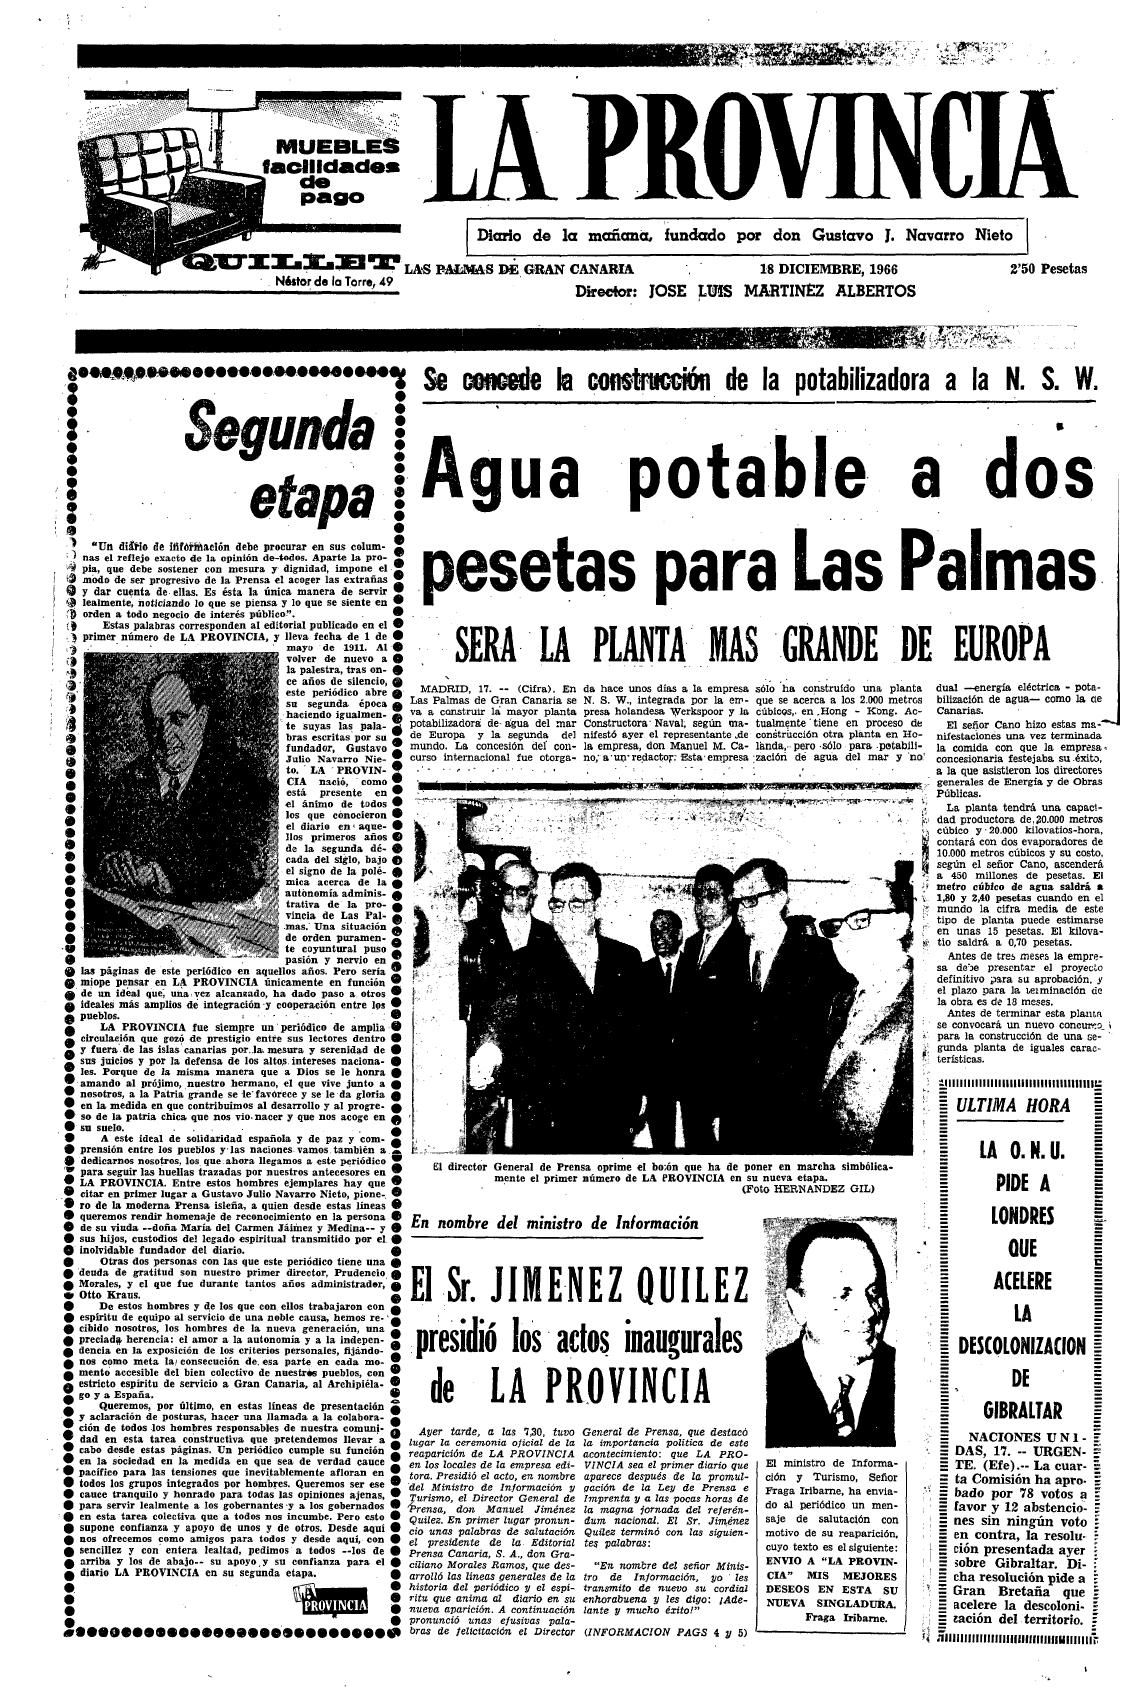 PORTADA DEL 18 DE DICIEMBRE DE 1966, FECHA DE LA REAPARICIÓN DEL DIARIO DESPUÉS DE UN SILENCIO DE MÁS DE ONCE AÑOS.